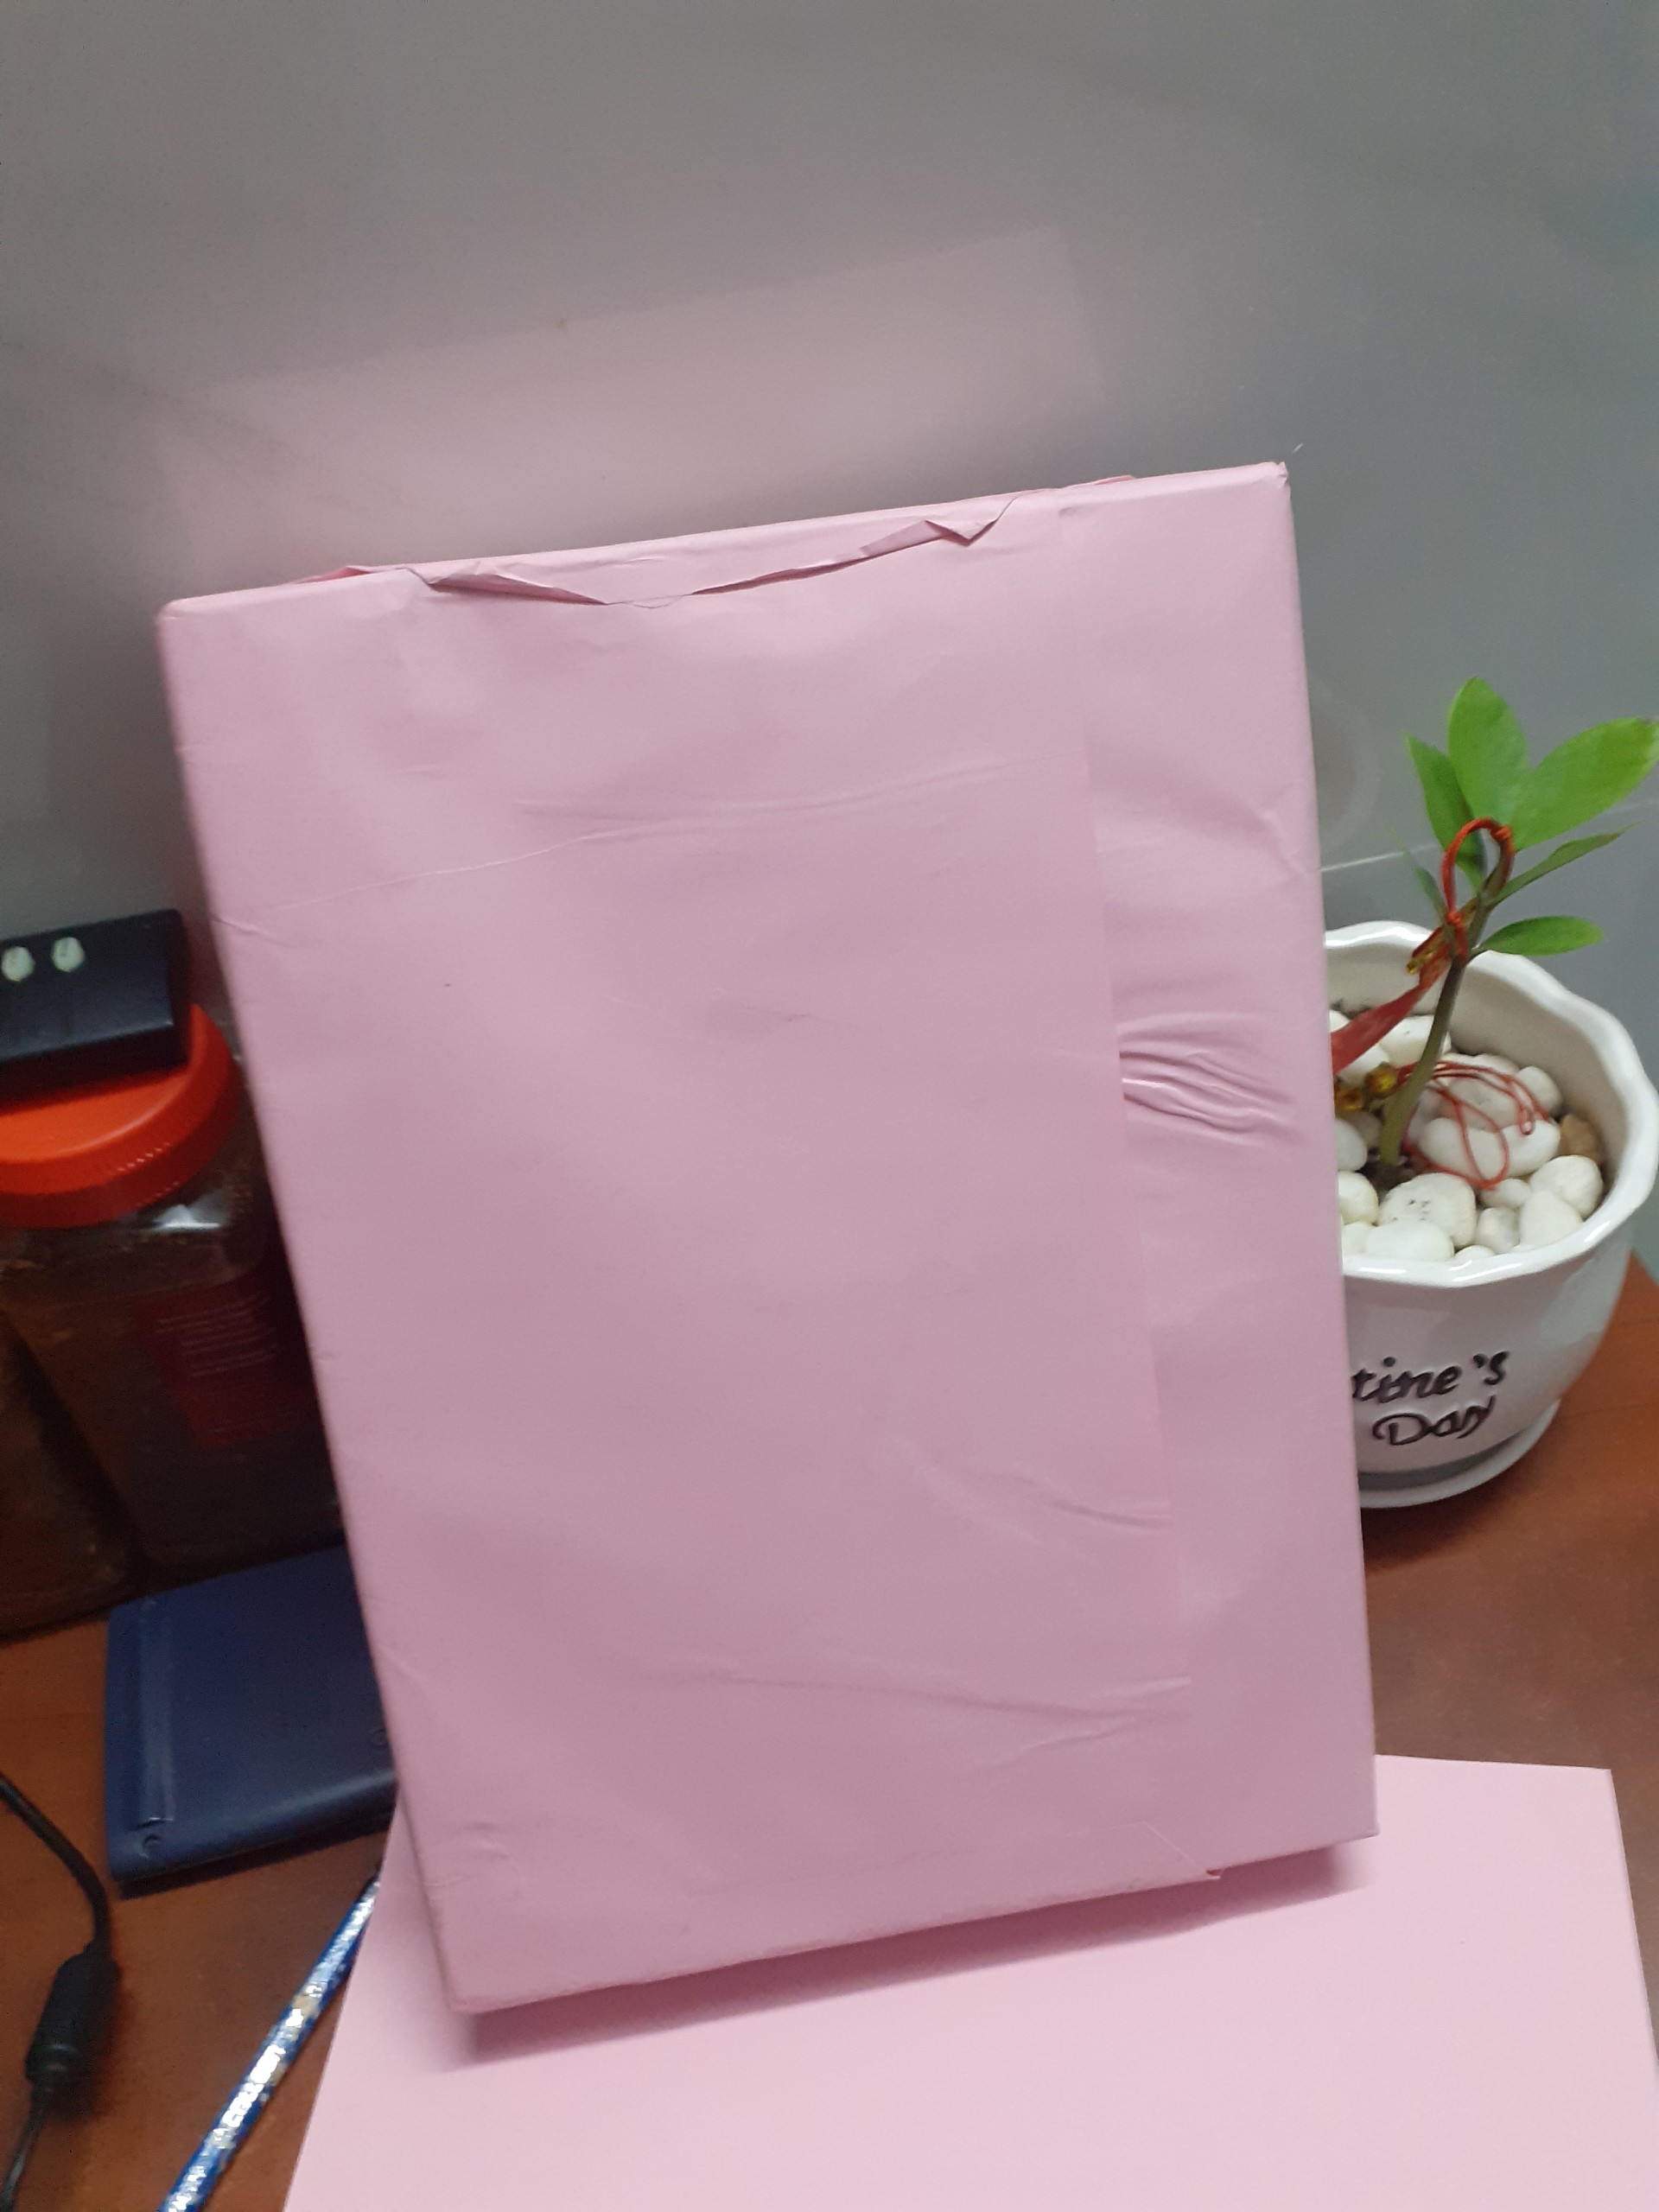 1 ram giấy A4 màu hồng thái lan ford 70gsm.